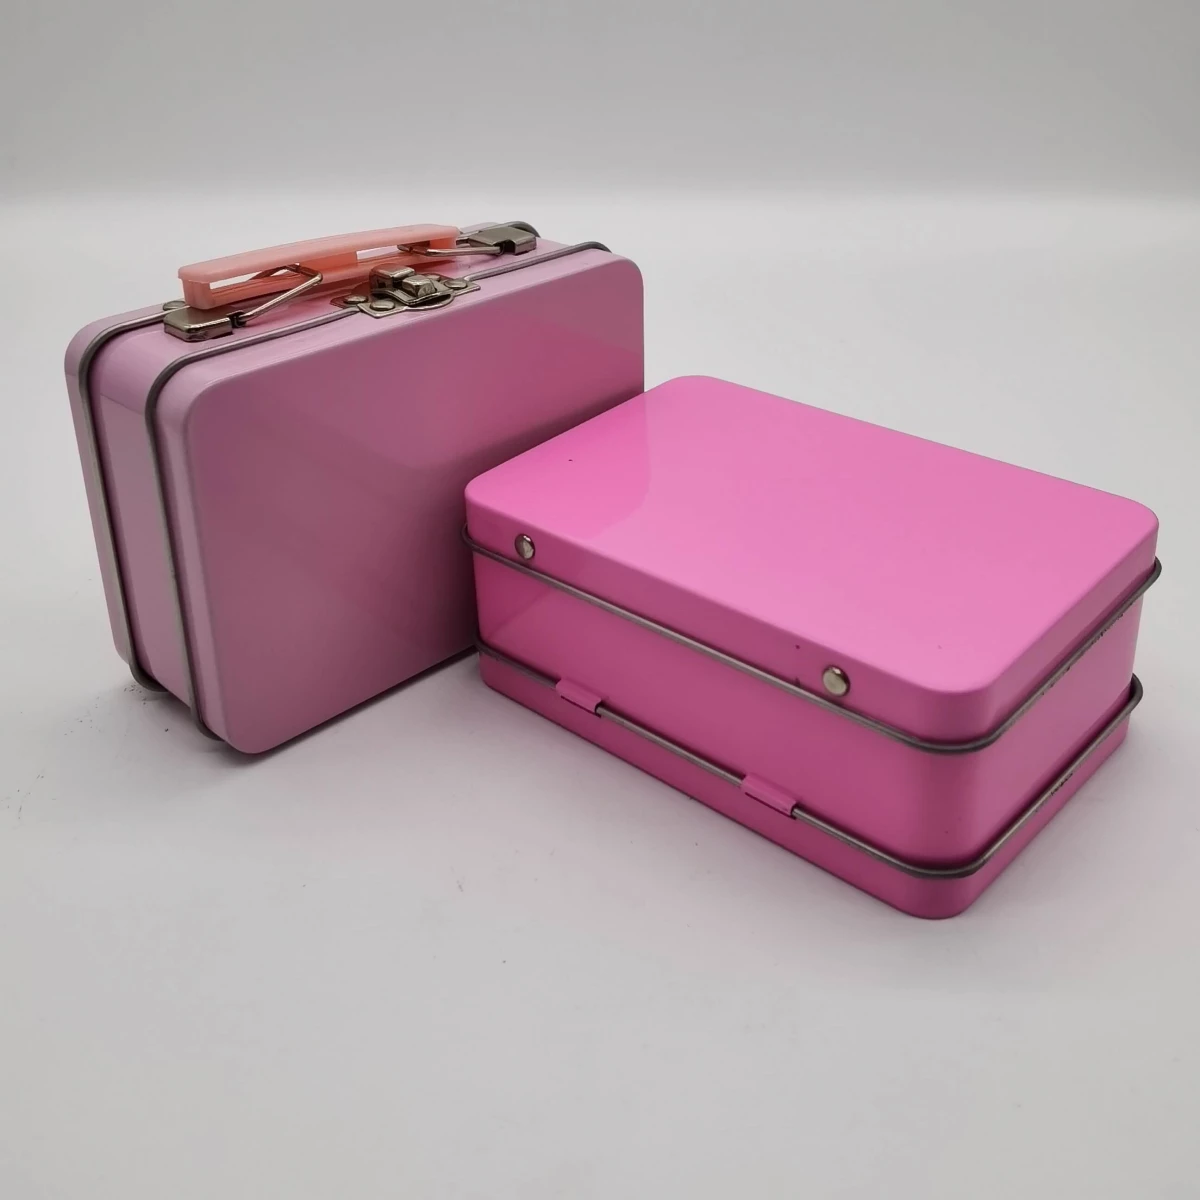 China mini cosmetic tin box Manufacturers, Factory - Buy mini cosmetic tin box at Good Price - Haohang